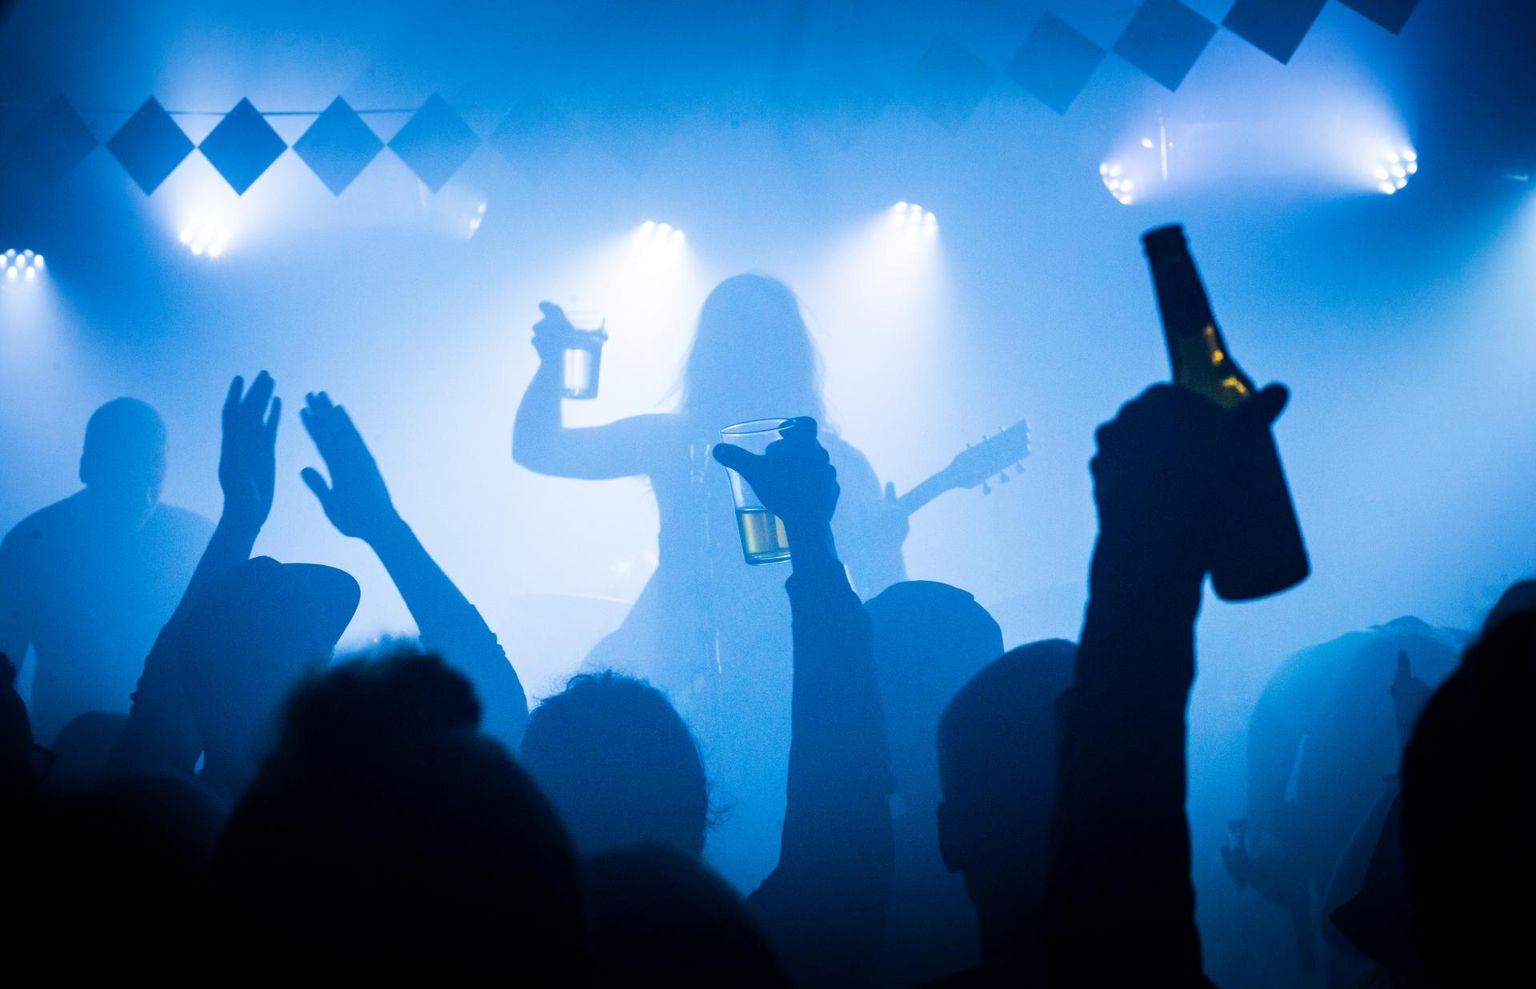 Metal-bändide kontsert Tallinnas Von Krahli teatris laupäeval. Öise alkoholimüügipiirangu eesmärk on vältida olukordi, kus inimesed viibivad hulganisti koos ja unustavad purjuspäi distantsi hoida. Sellel kontserdil lõpetati alkoholimüük kell 23.